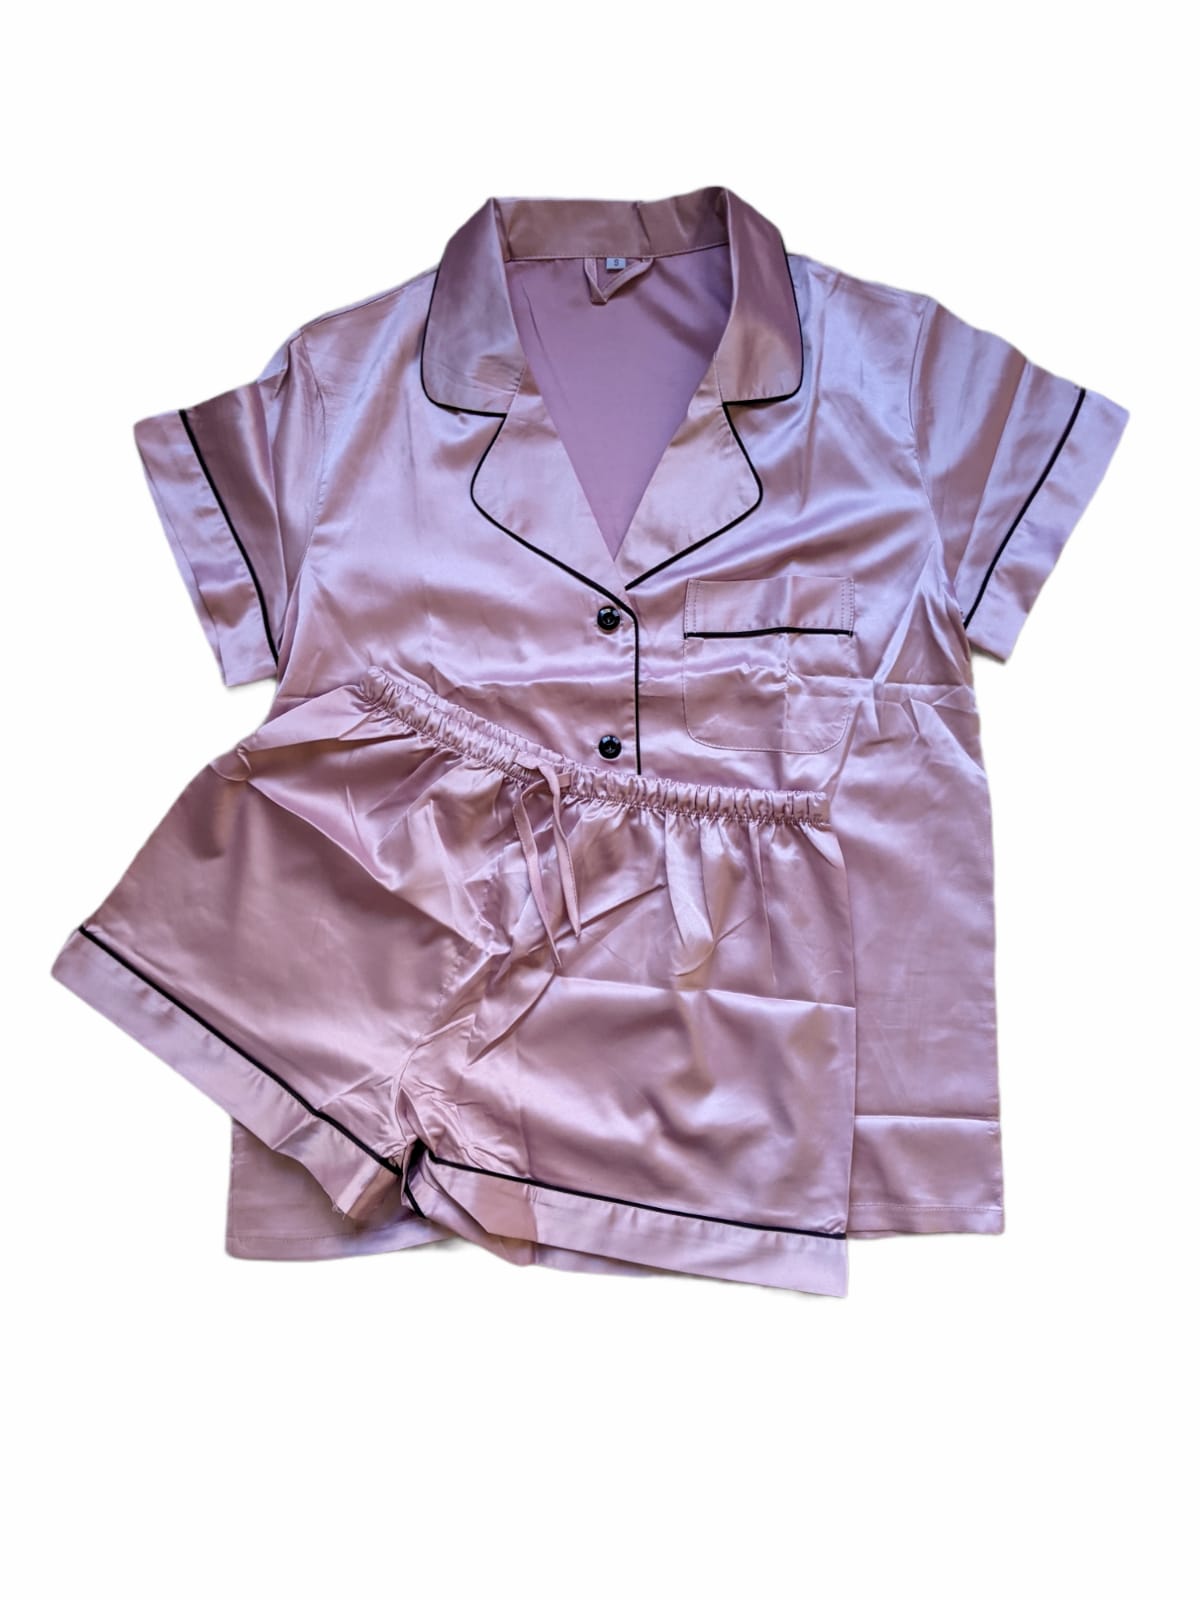 Satin Personalised Pyjama Set - Nude Pink and Black